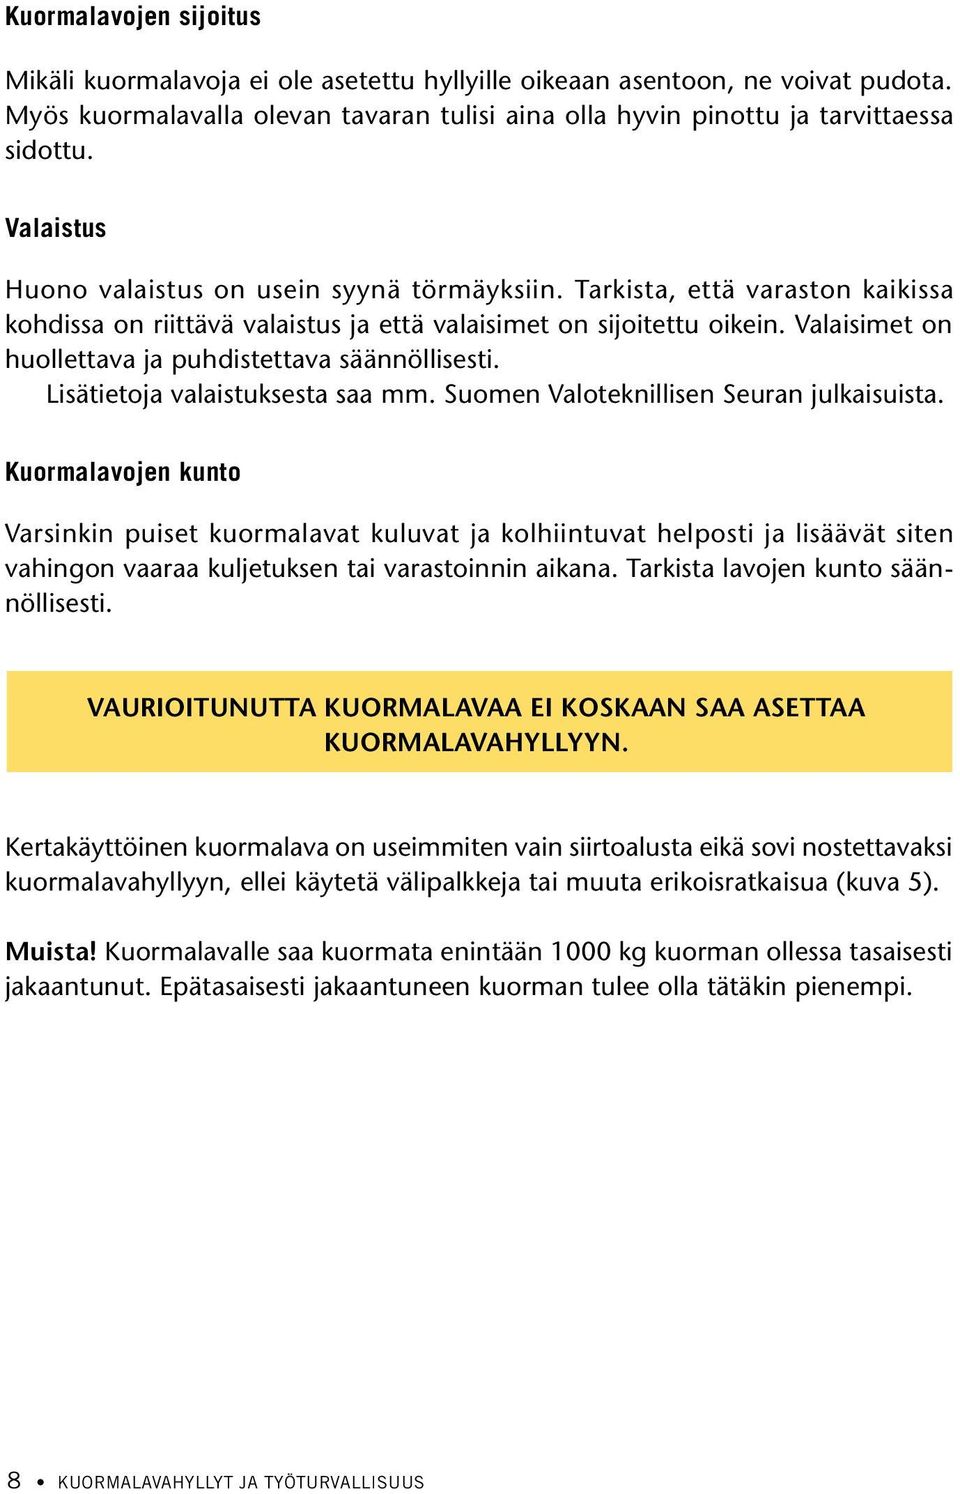 Valaisimet on huollettava ja puhdistettava säännöllisesti. Lisätietoja valaistuksesta saa mm. Suomen Valoteknillisen Seuran julkaisuista.